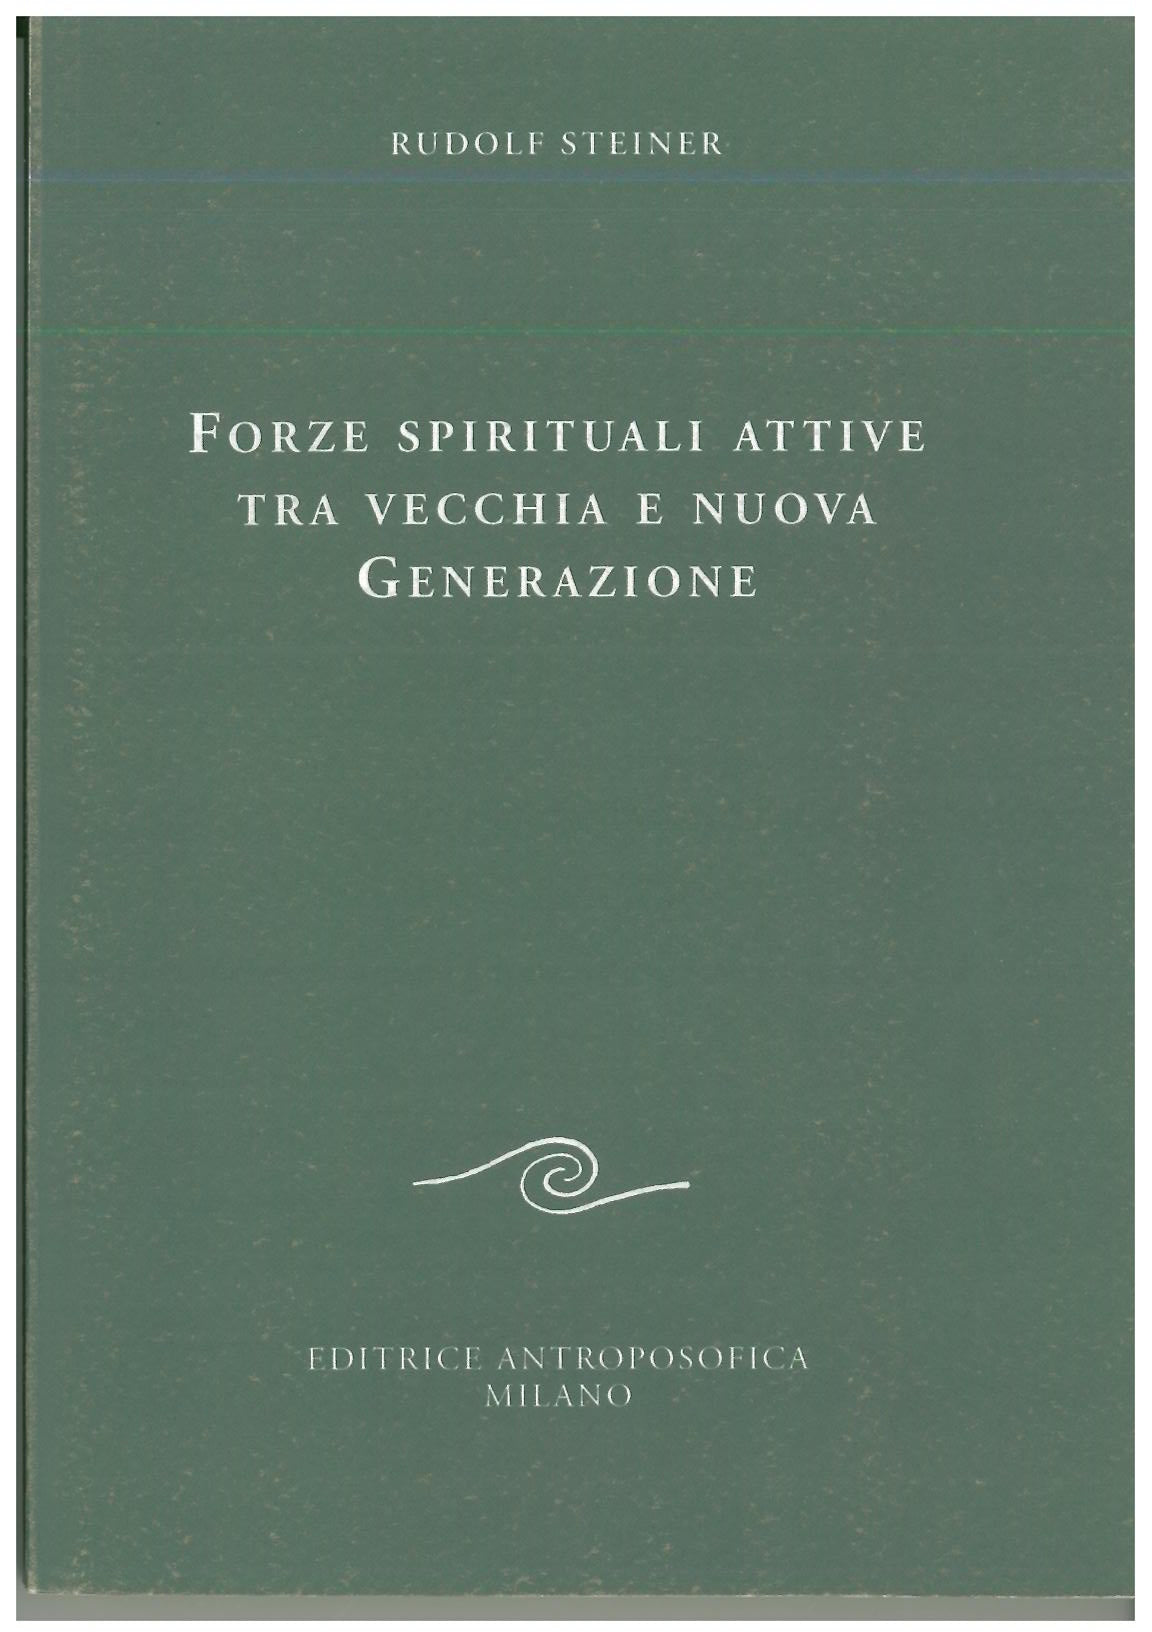 Forze spirituali attive tra vecchia e nuova generazione - Rudolf Steiner